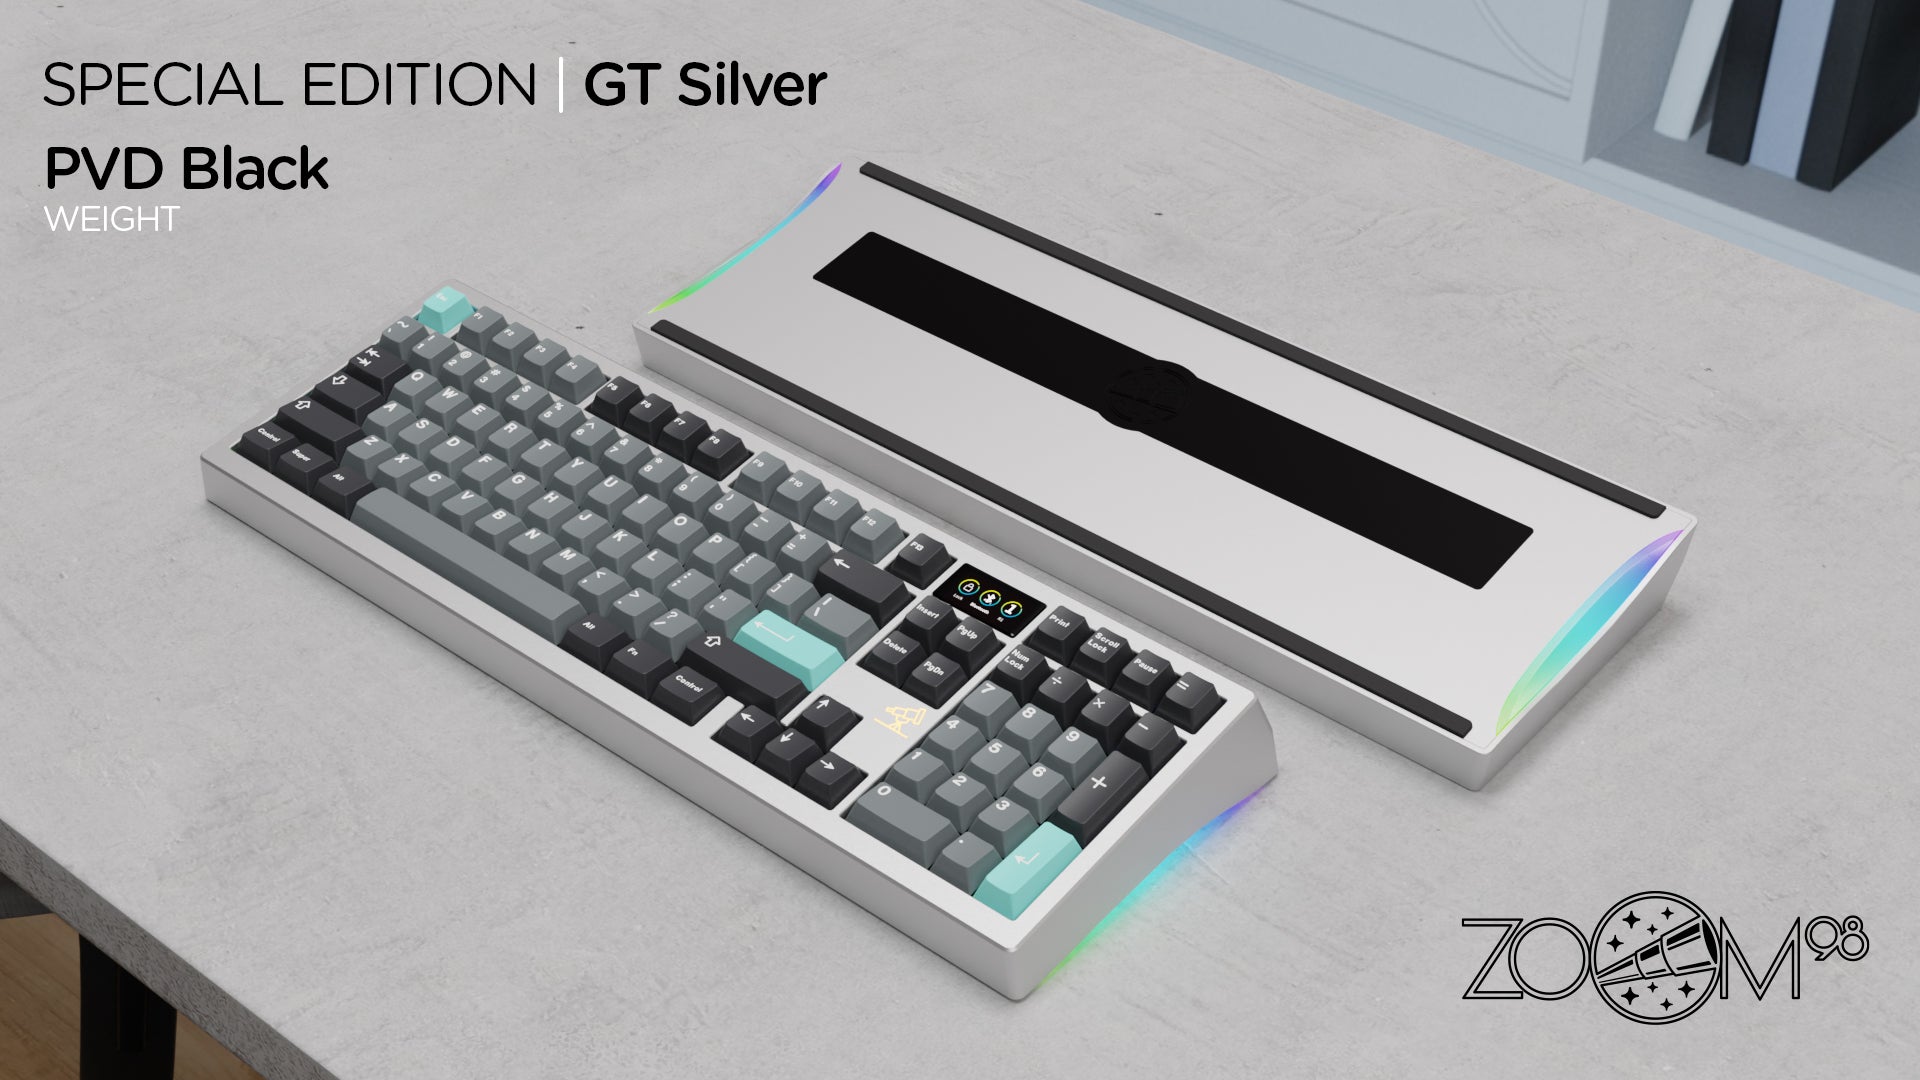 Zoom98 SE GT Silver